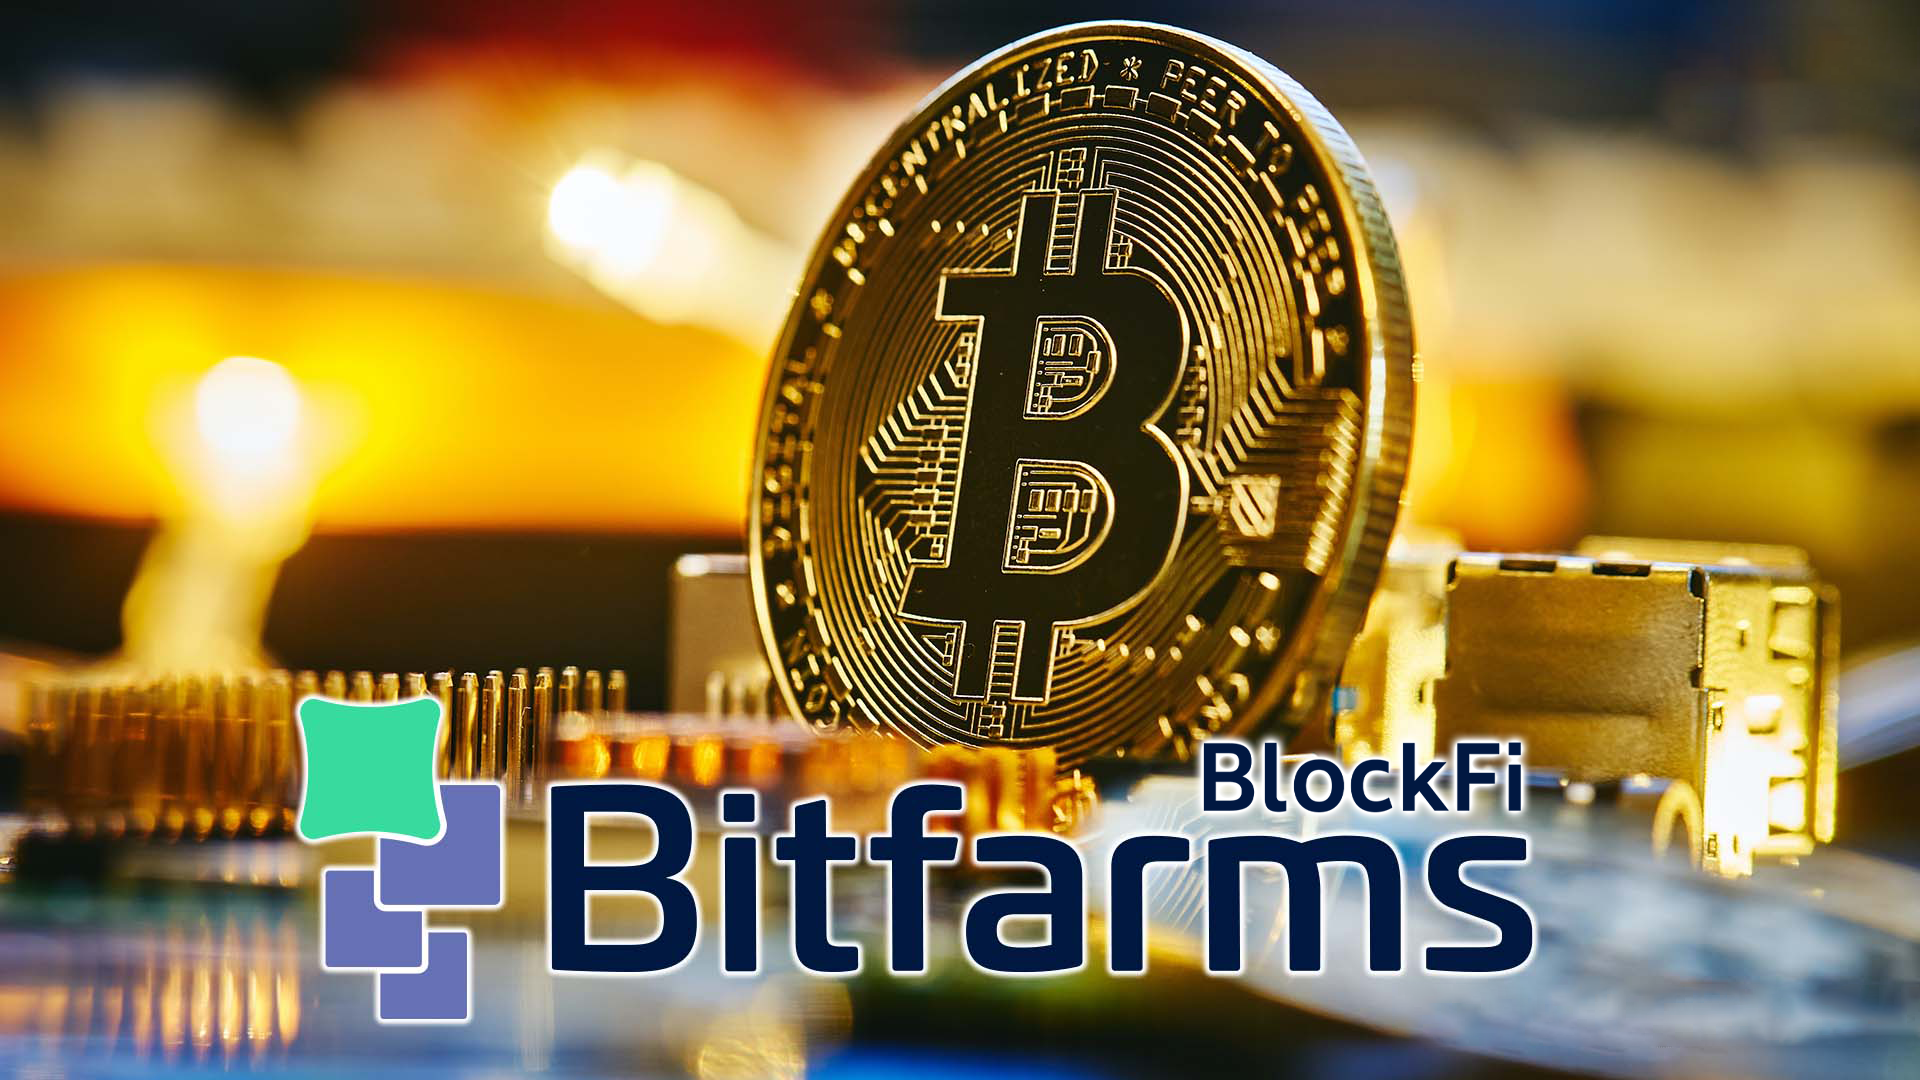 Bitfarm พยายามปรับเปลี่ยนวงเงินสินเชื่อด้วย BlockFi เมื่อตลาดหมีลากยาว